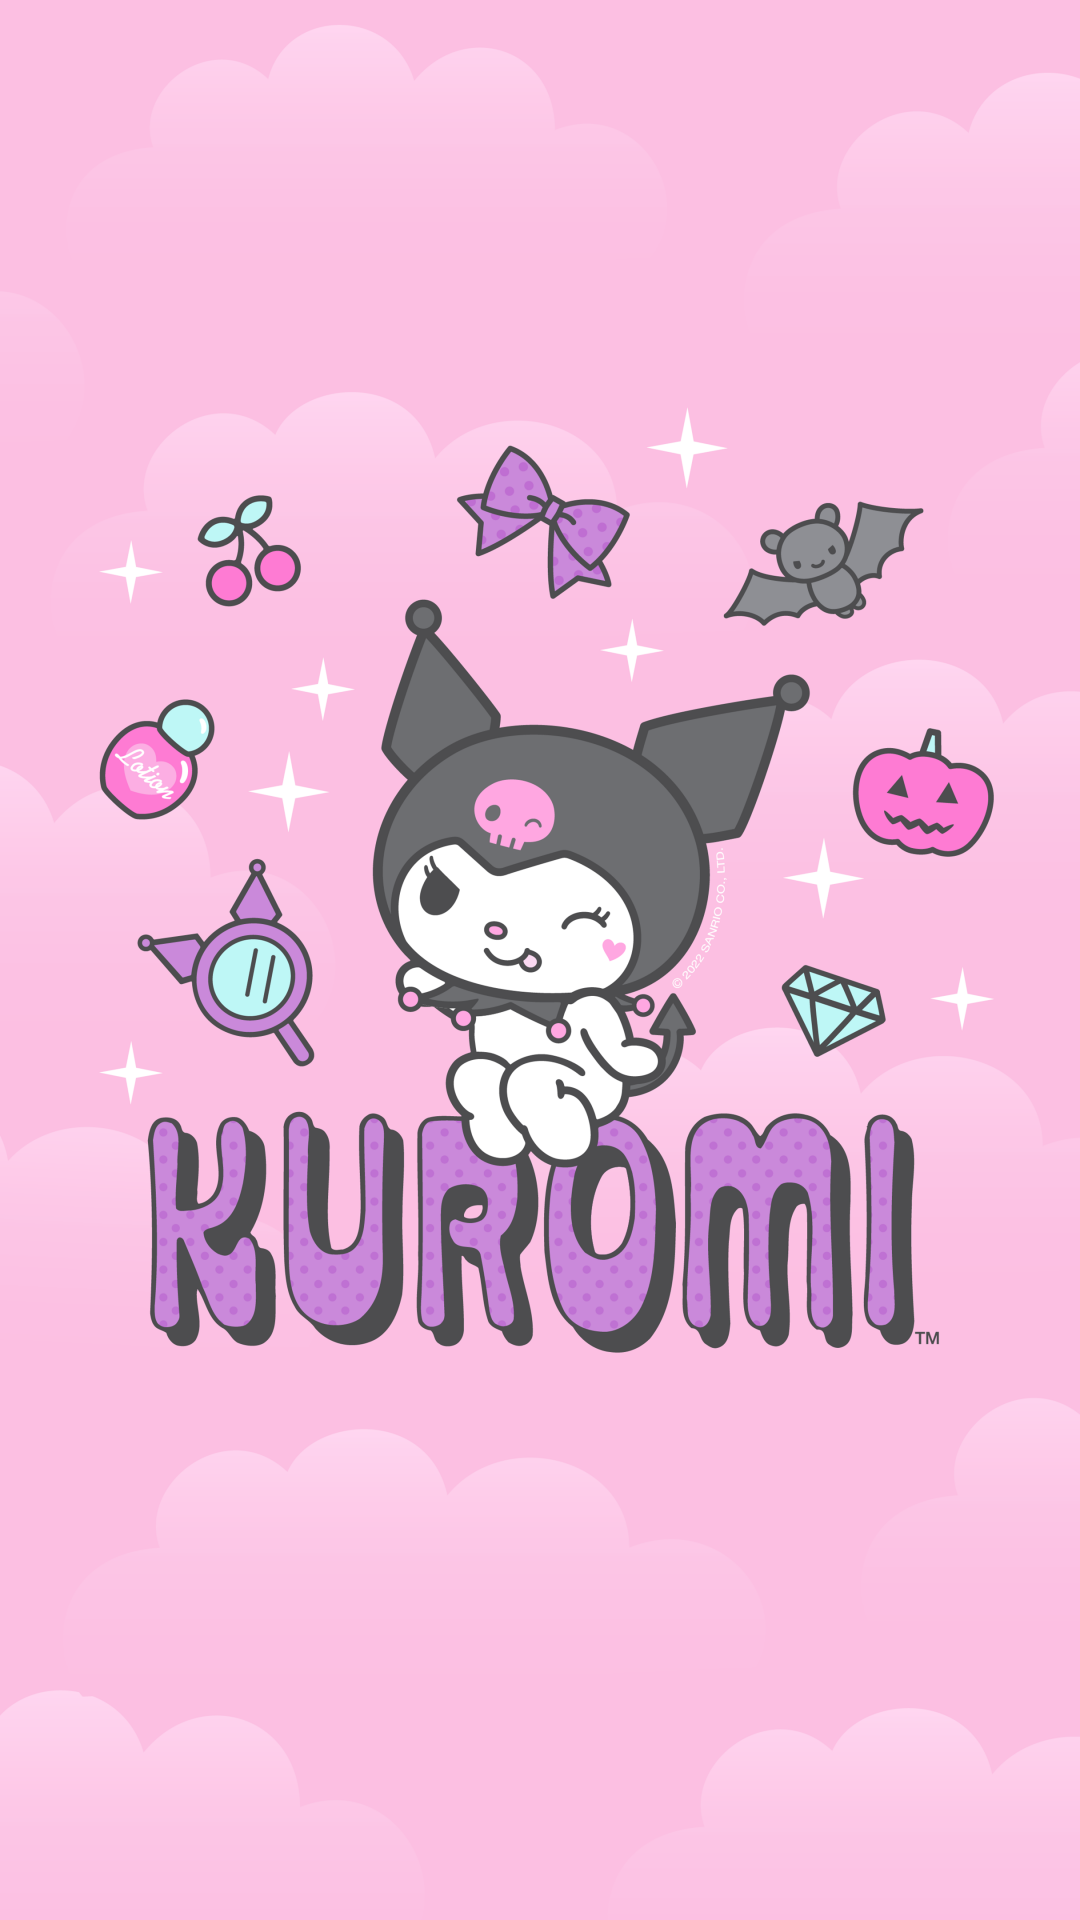 Với Kuromi Wallpaper, bạn sẽ được khám phá thế giới đầy màu sắc với nhân vật Kuromi đáng yêu. Tường điện thoại của bạn sẽ trở nên đáng yêu hơn khi trang trí với hình ảnh Kuromi này. Hãy xem ngay để cảm nhận sự đáng yêu và độc đáo của Kuromi Wallpaper.